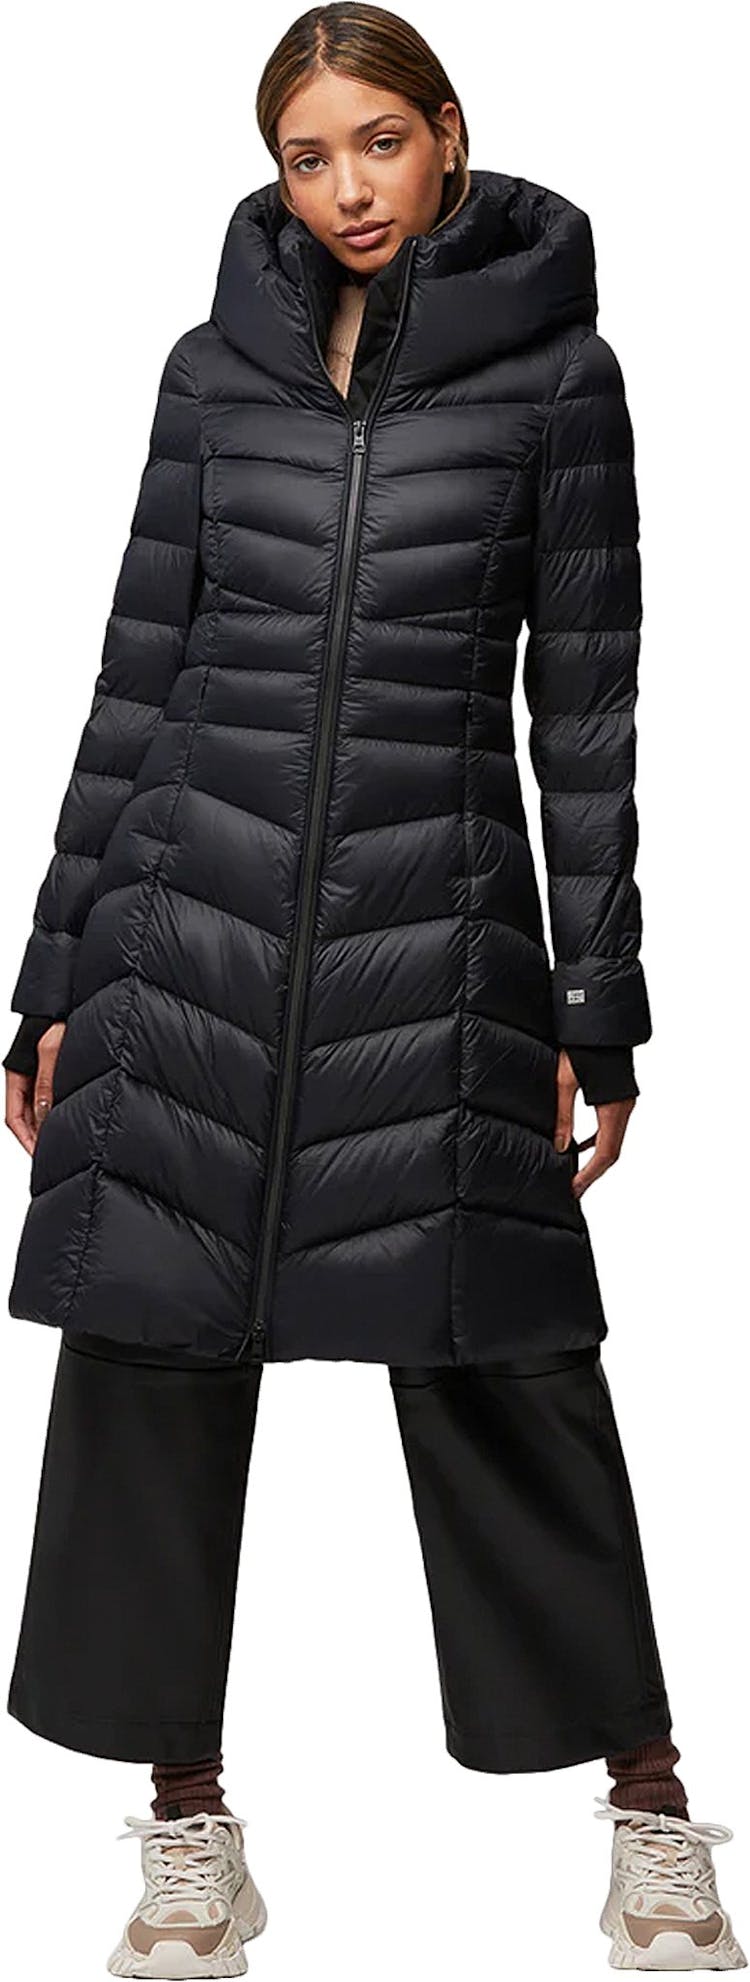 Numéro de l'image de la galerie de produits 4 pour le produit Manteau ajusté et évasé en duvet léger durable avec capuchon Lita-TD - Femme